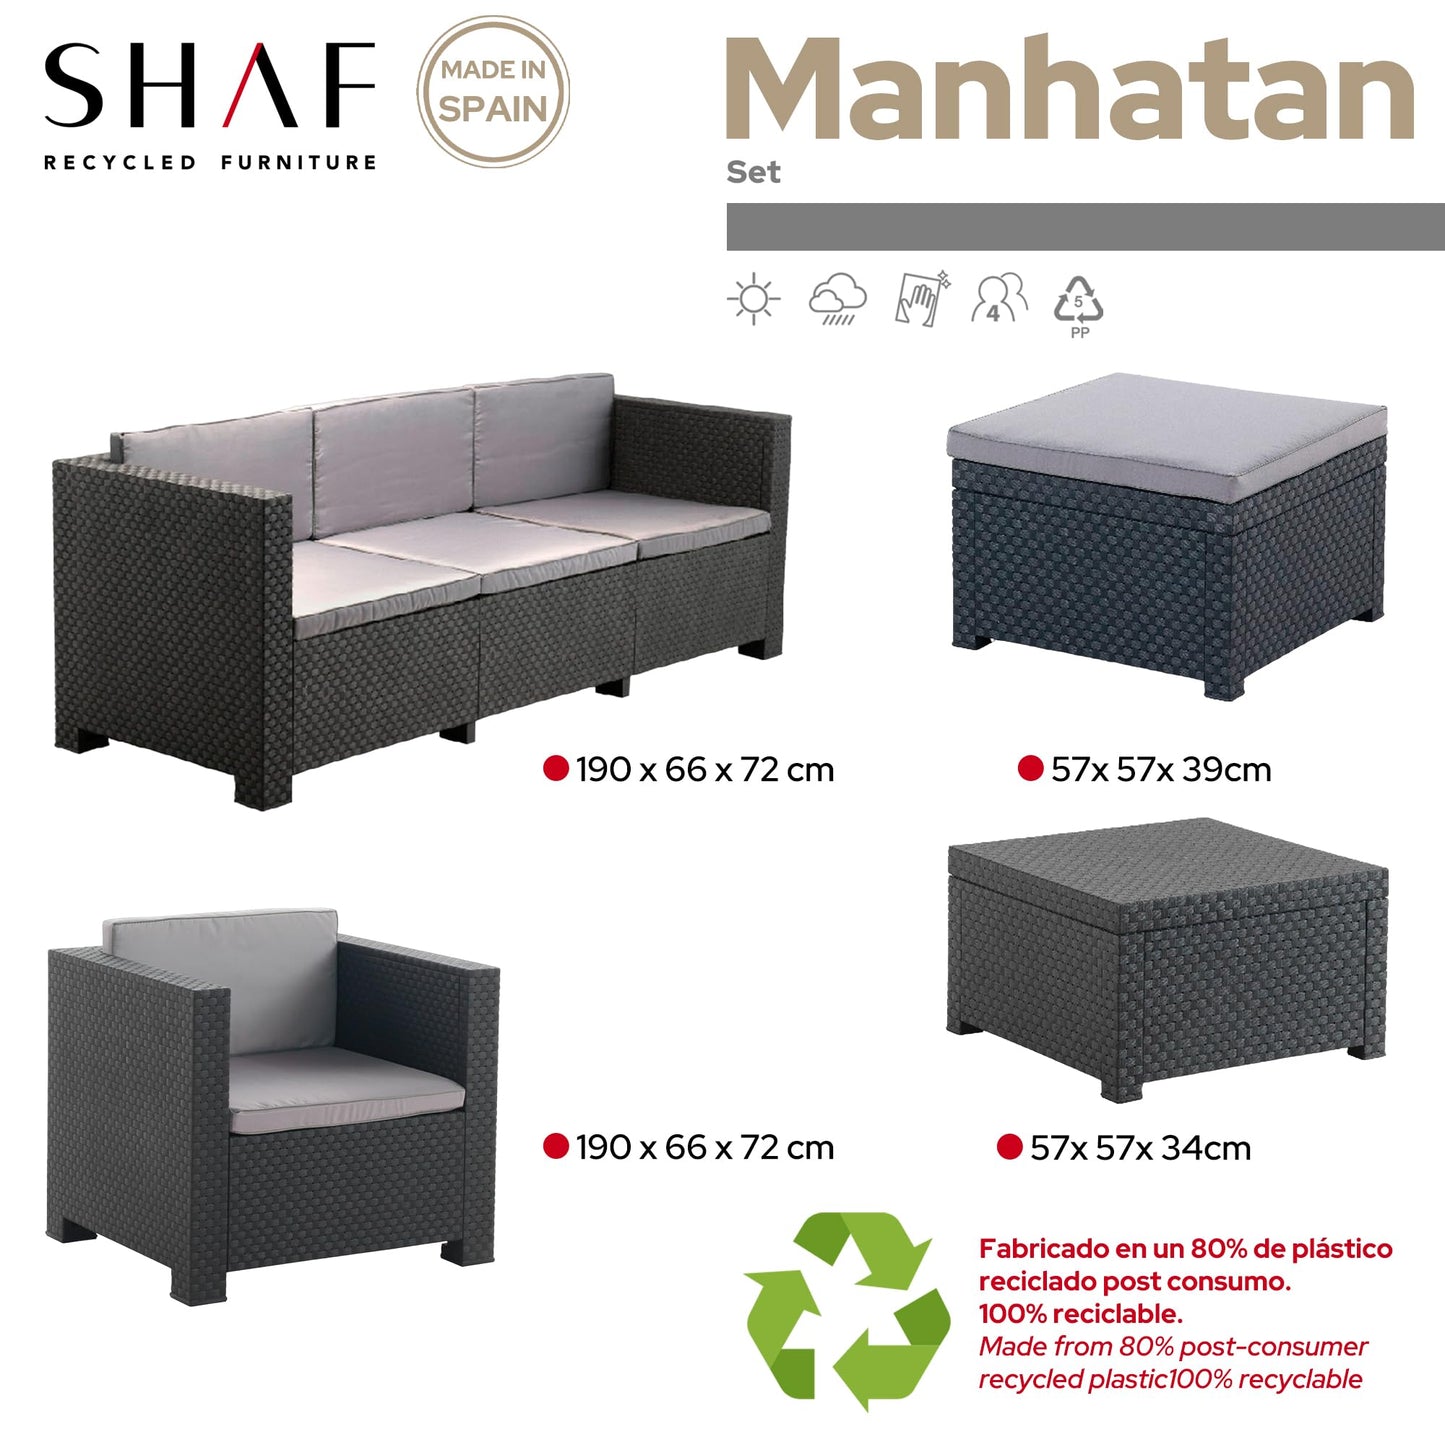 Shaf - Manhattan | Set Muebles de Salon Exterior - Conjunto Muebles Jardin Exterior 5 Plazas | Fabricado en España con Materiales Reciclados - Color Grafito